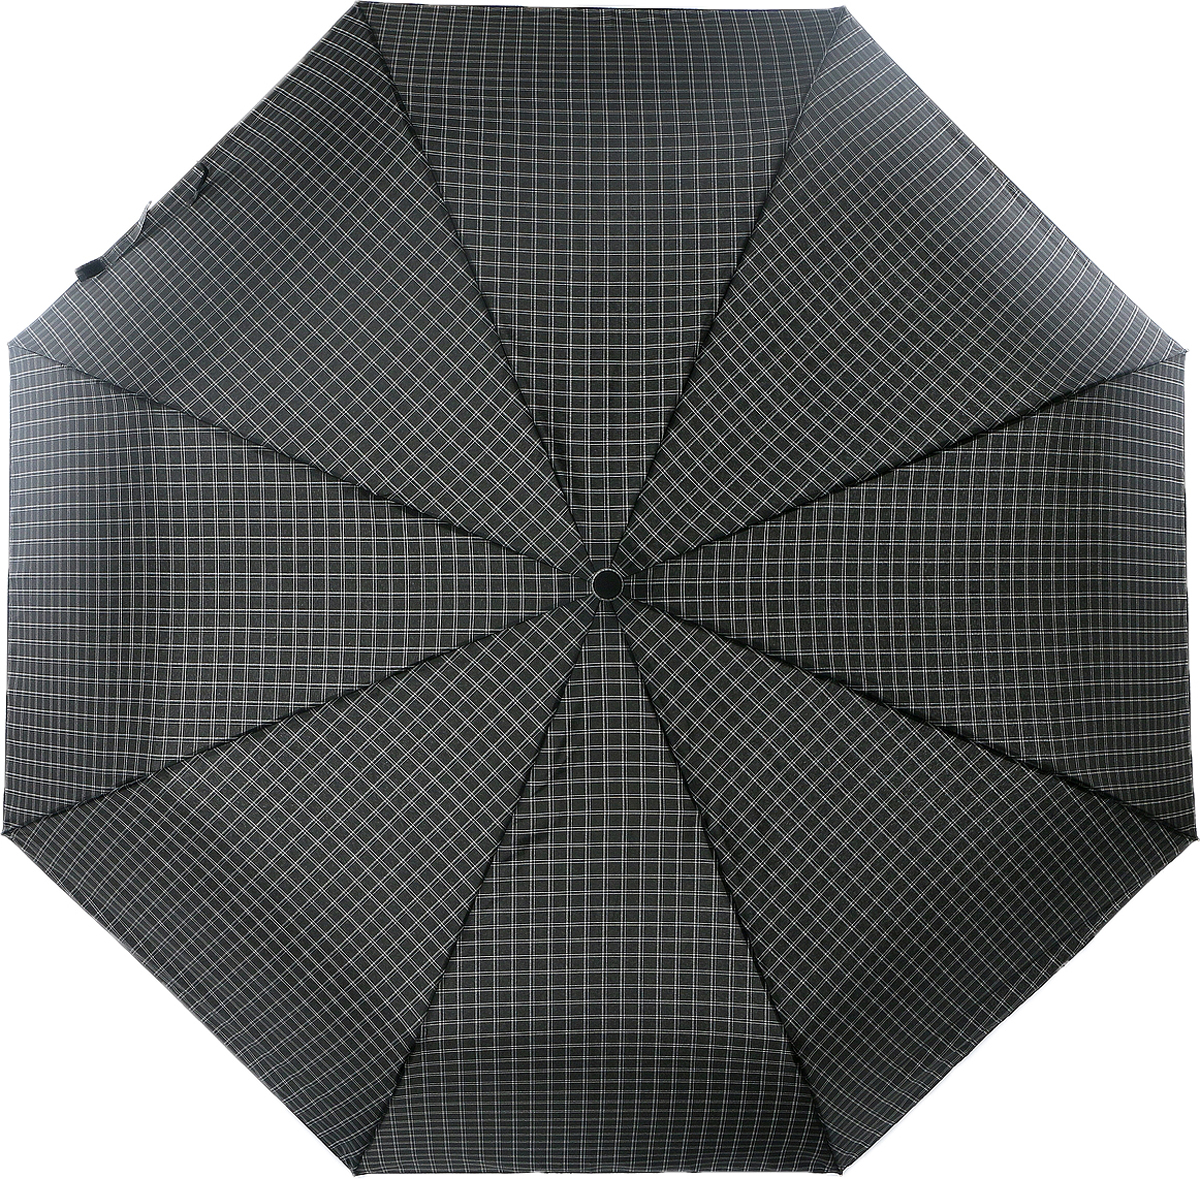 Зонт мужской Magic Rain, автомат, 3 сложения, цвет: черный, белый, серый. 7027-1703